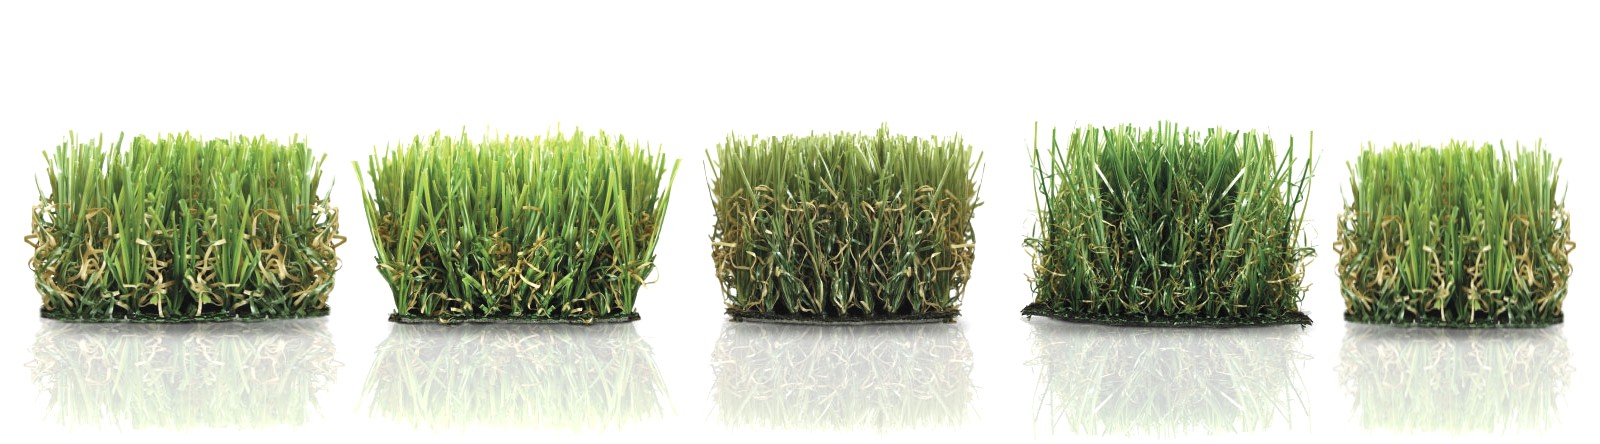 DETRAZIONI FISCALI | Pavimenti Interni ed Esterni prato sintetico erba artificiale prato artificiale